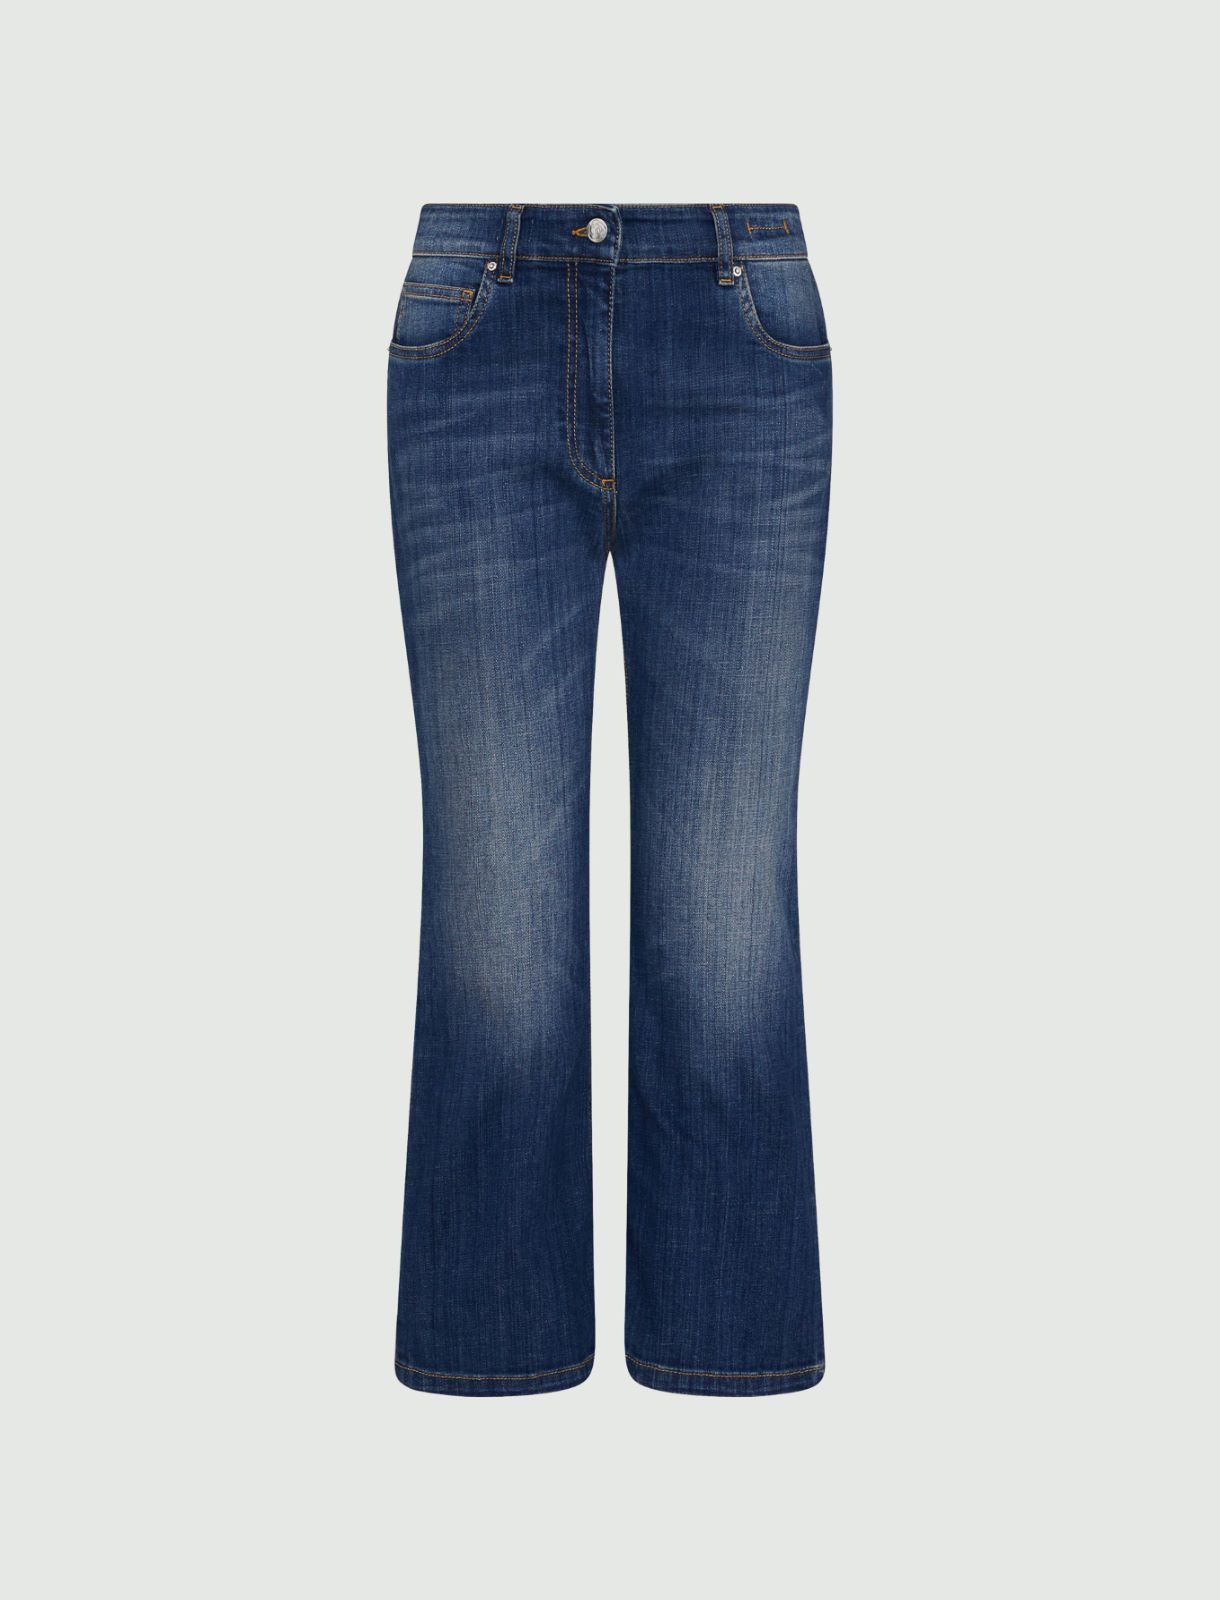 Jean patte d’éph - Bleu jeans - Marella - 6